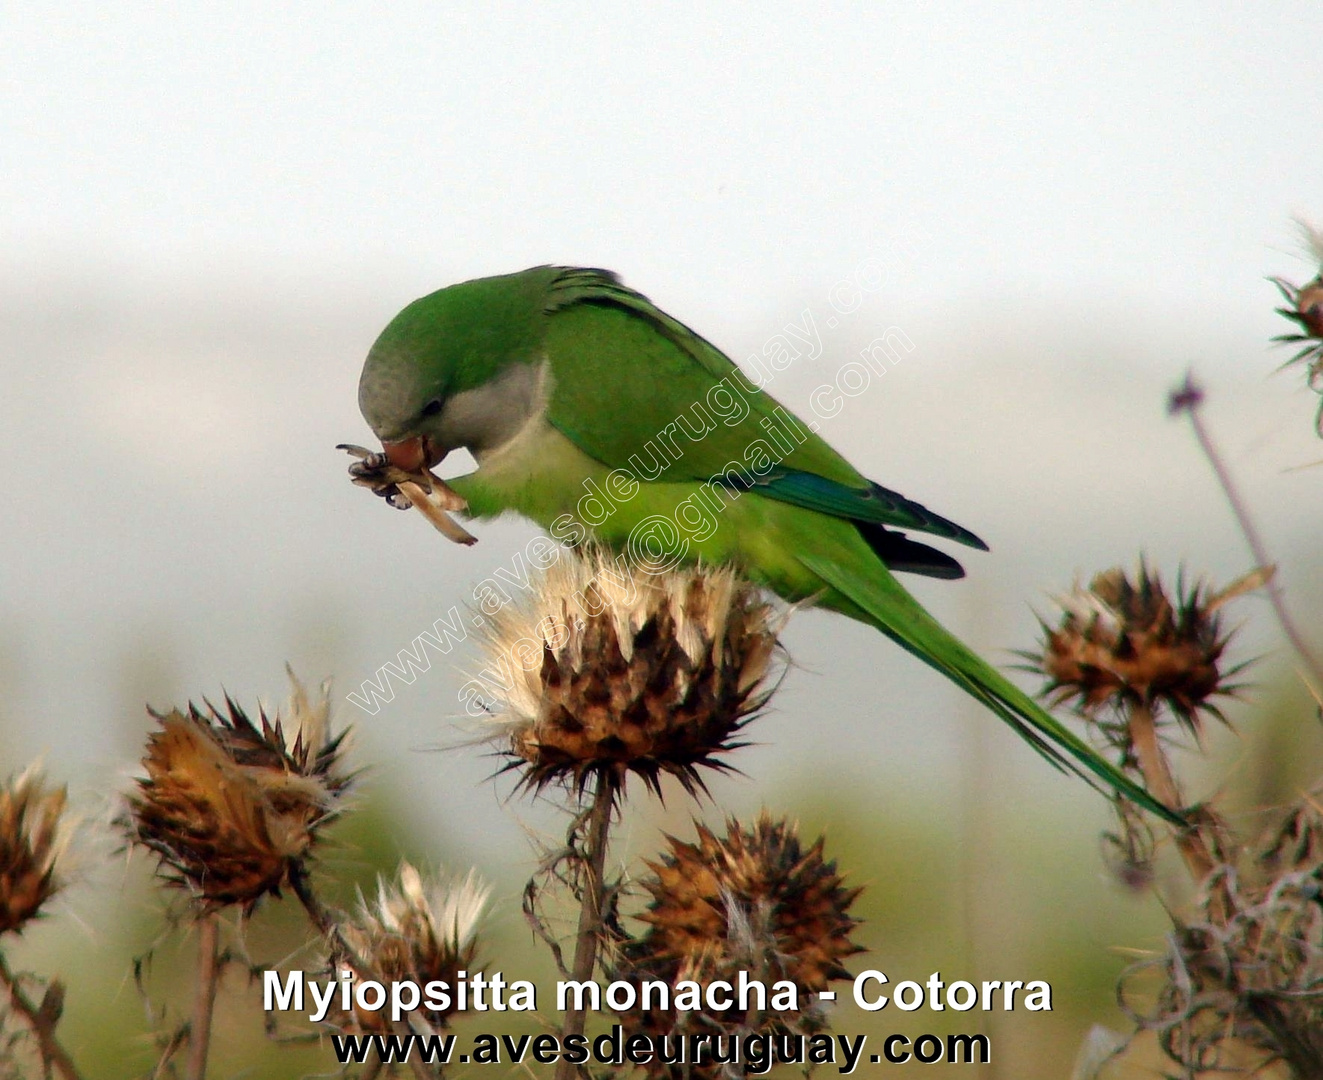 Cotorra - Myiopsitta monacha